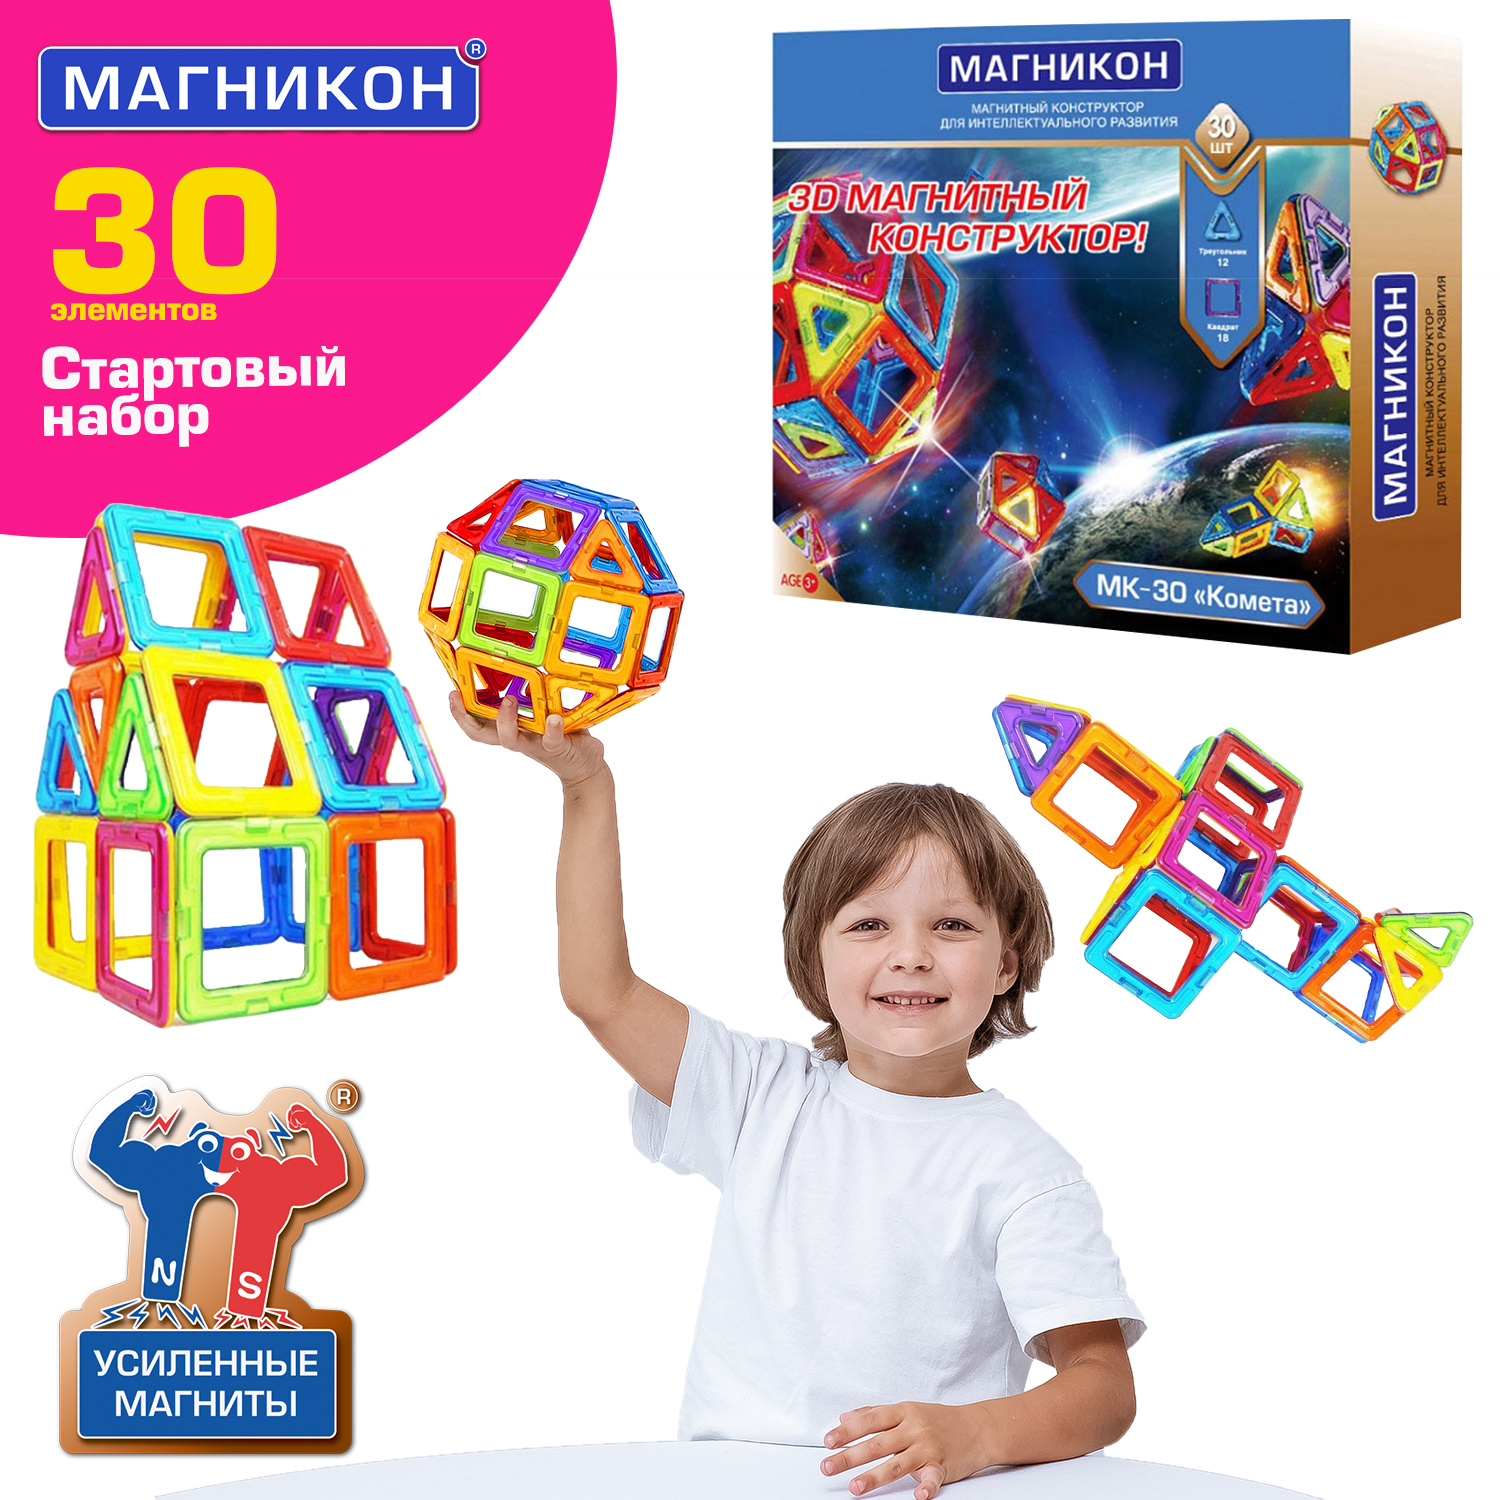 3D-конструкторы Магникон для детей